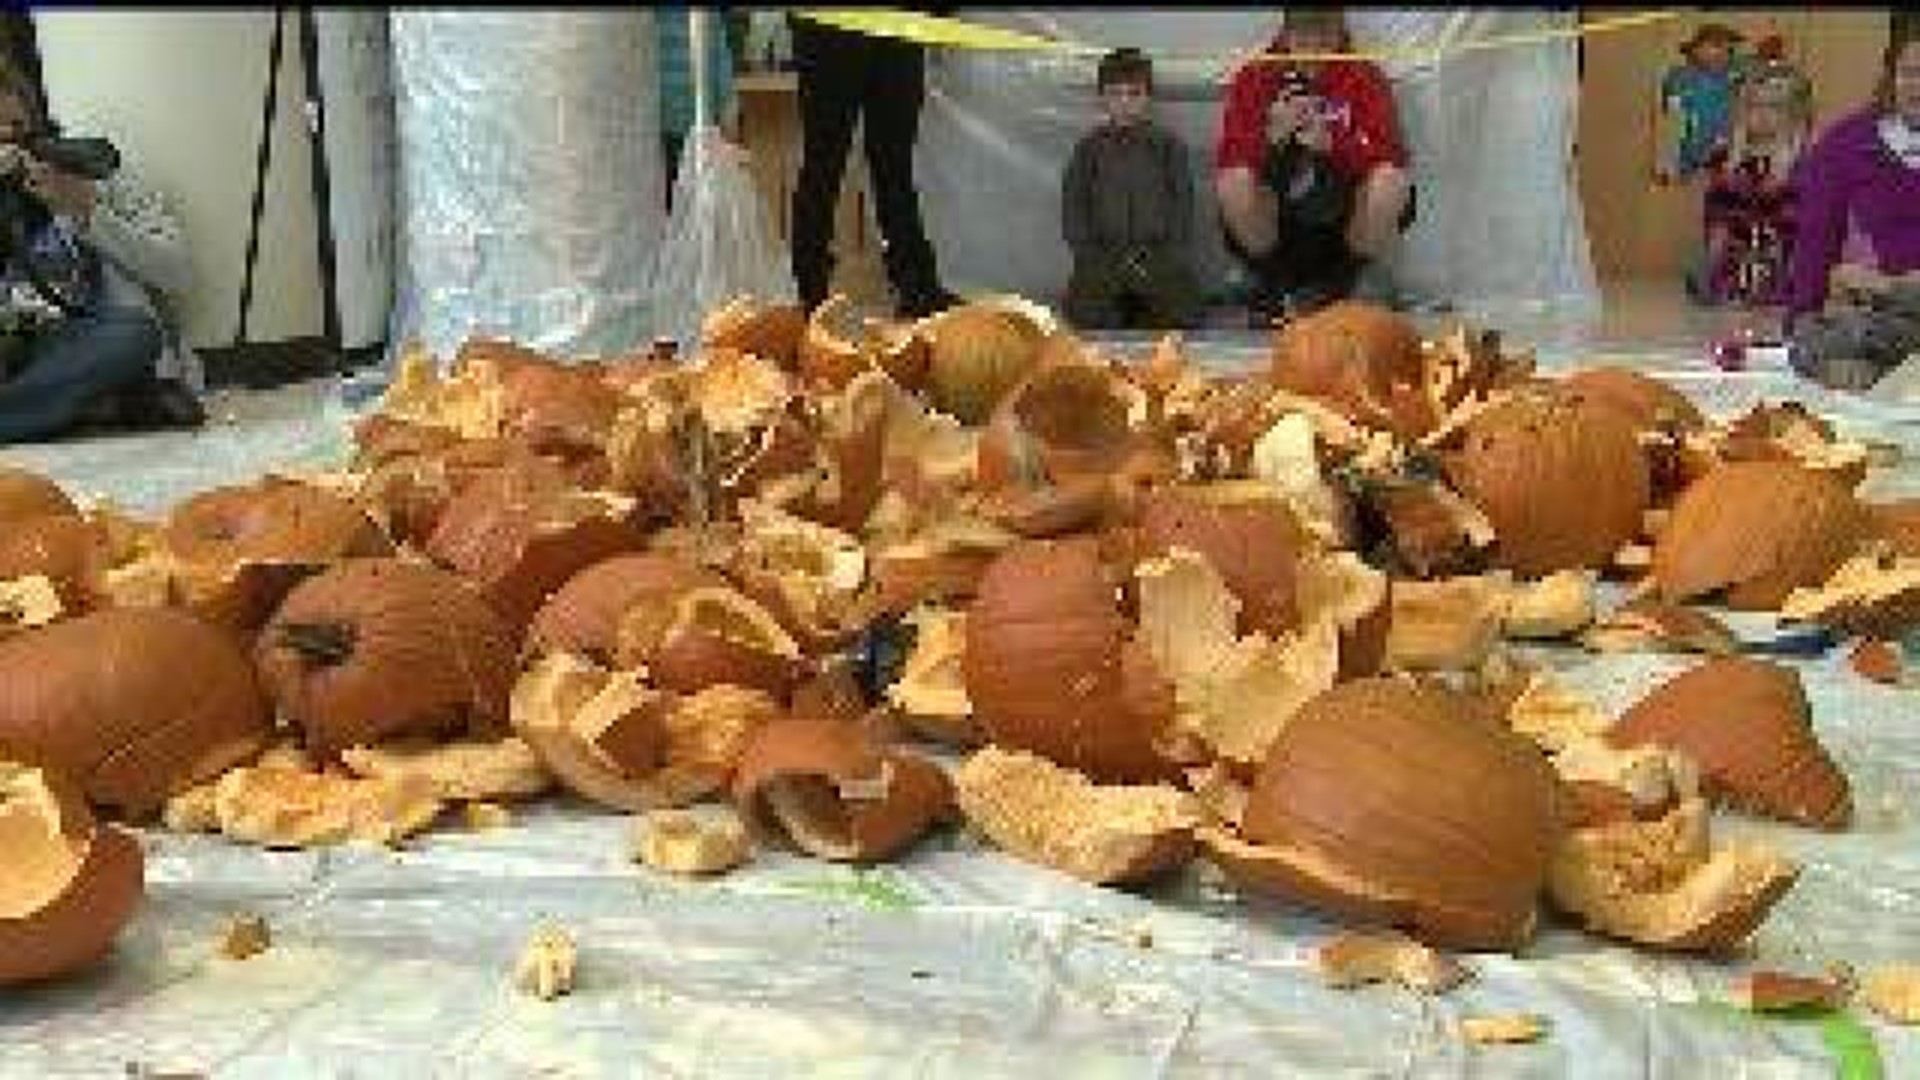 Families bring jack-o-lanterns to Pumpkin Smash